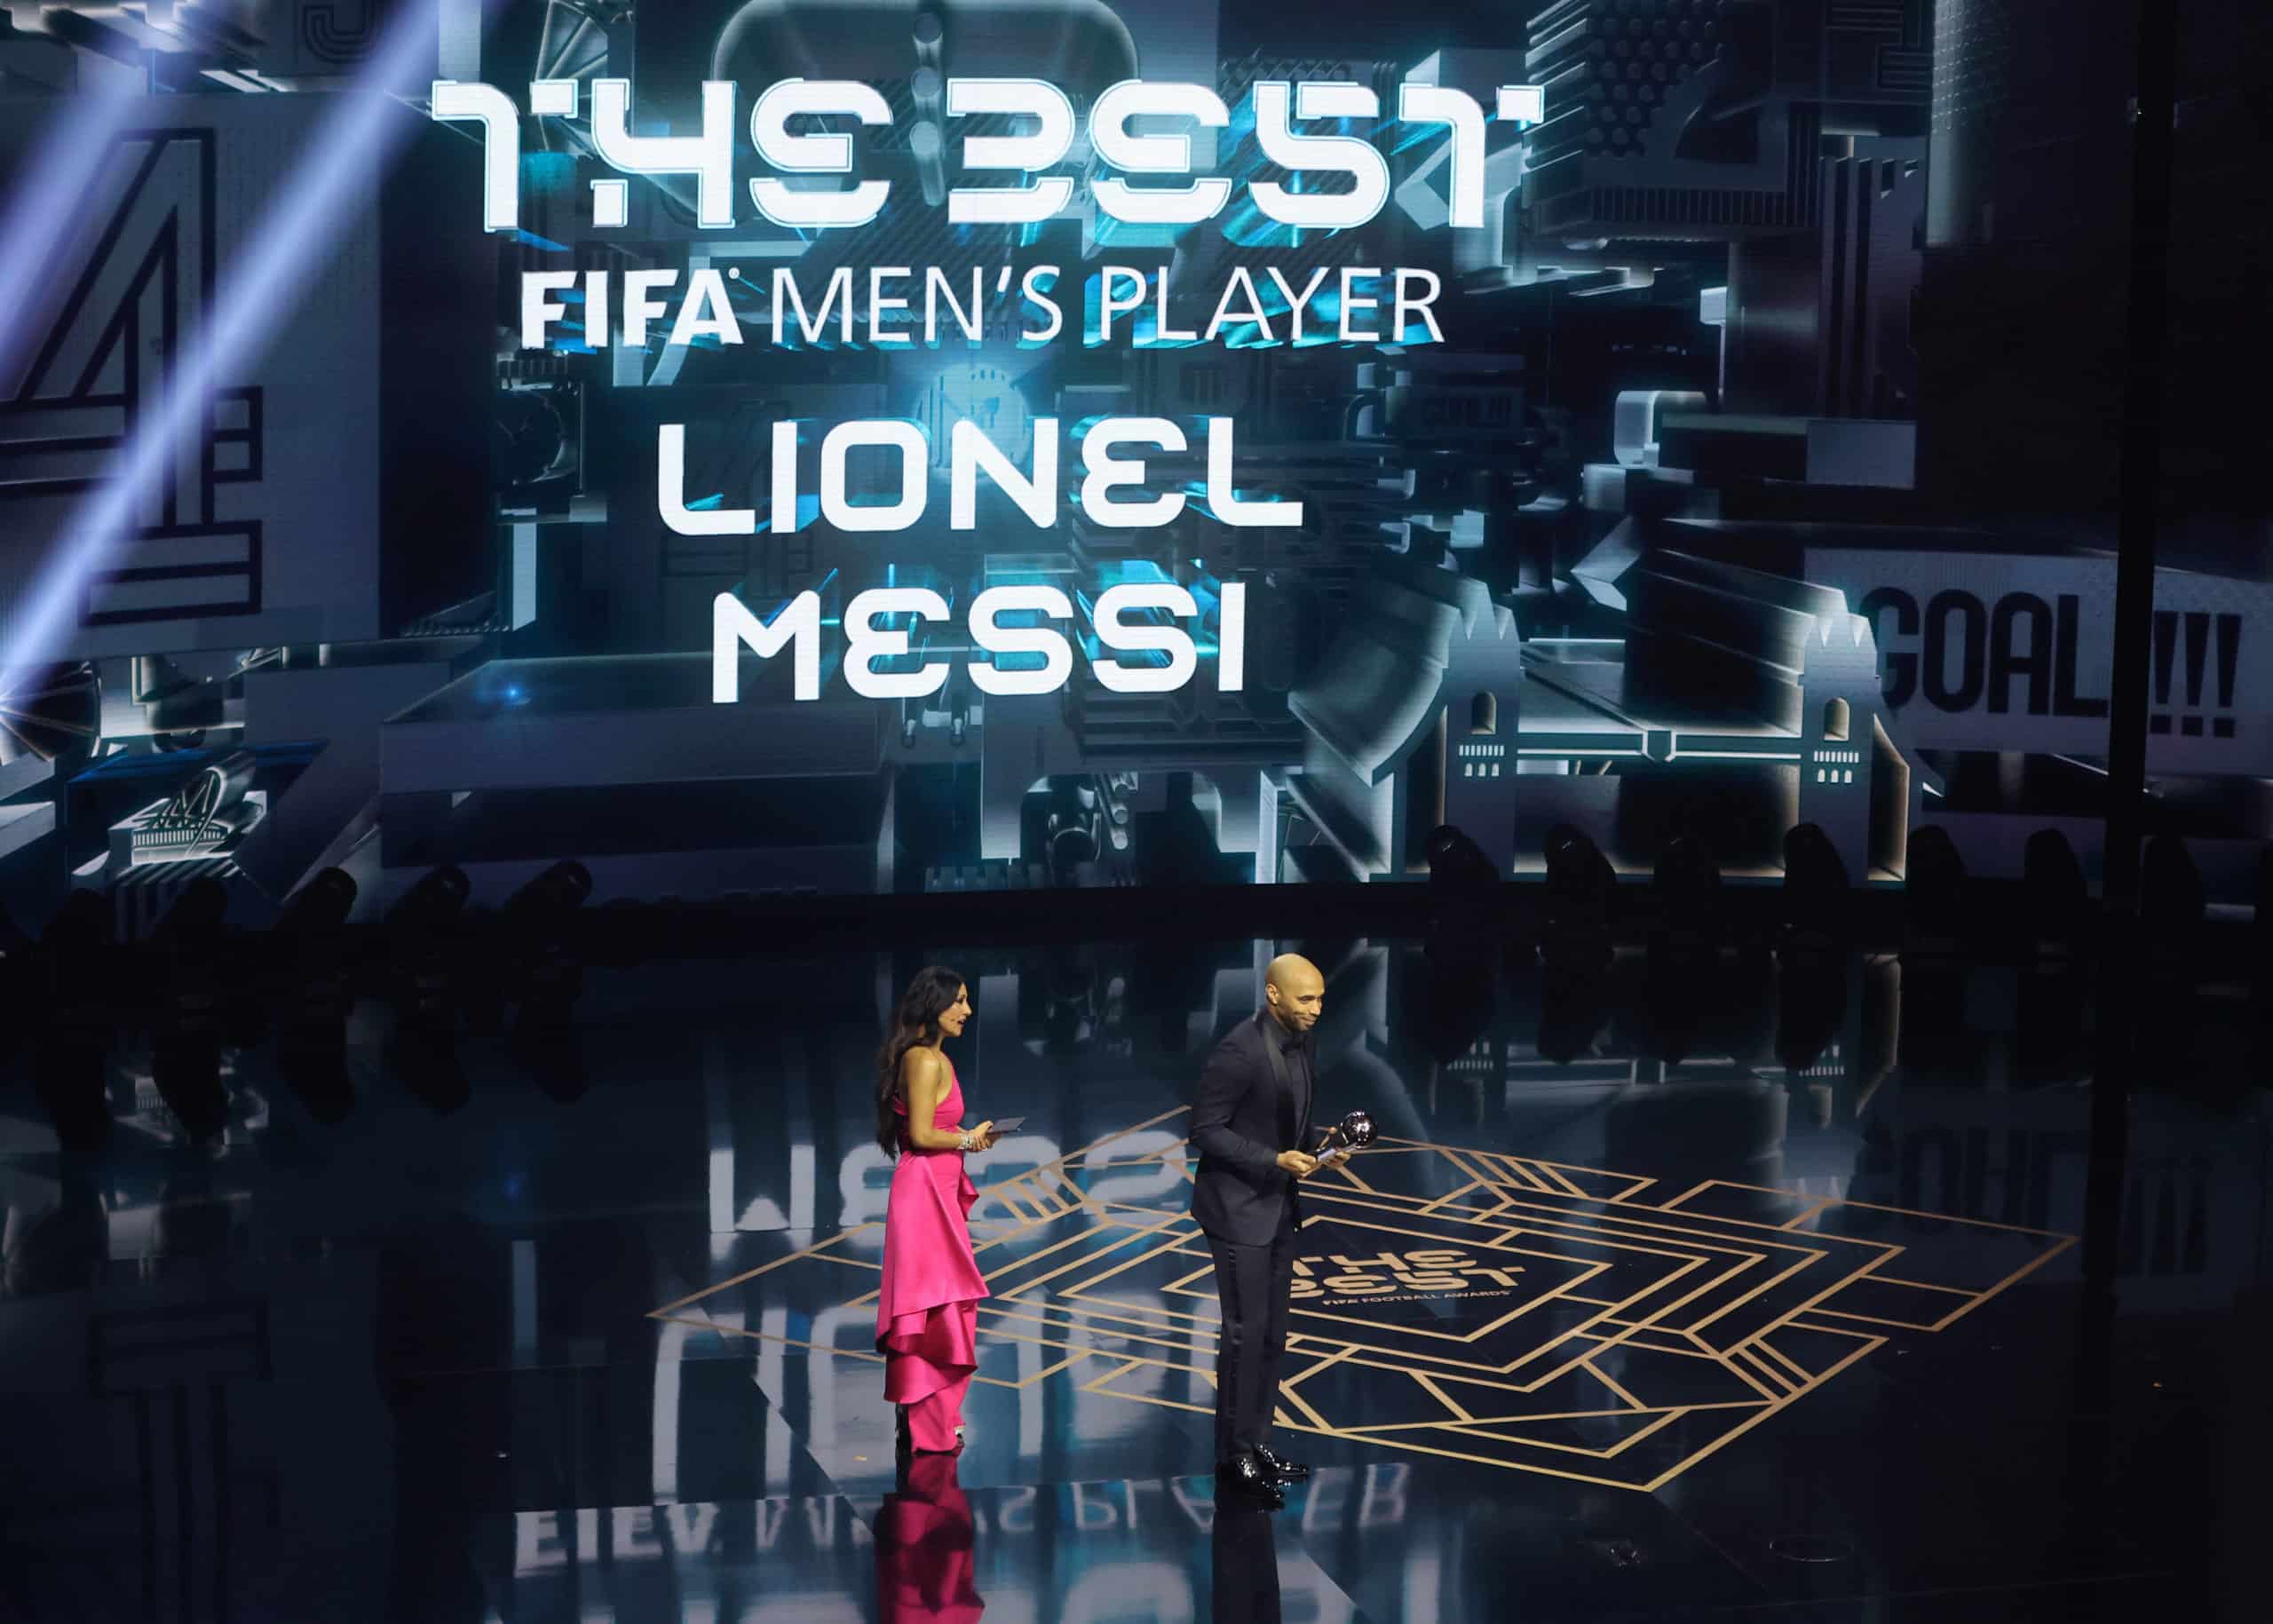 Messi conquistou o prêmio, mas não compareceu à cerimônia